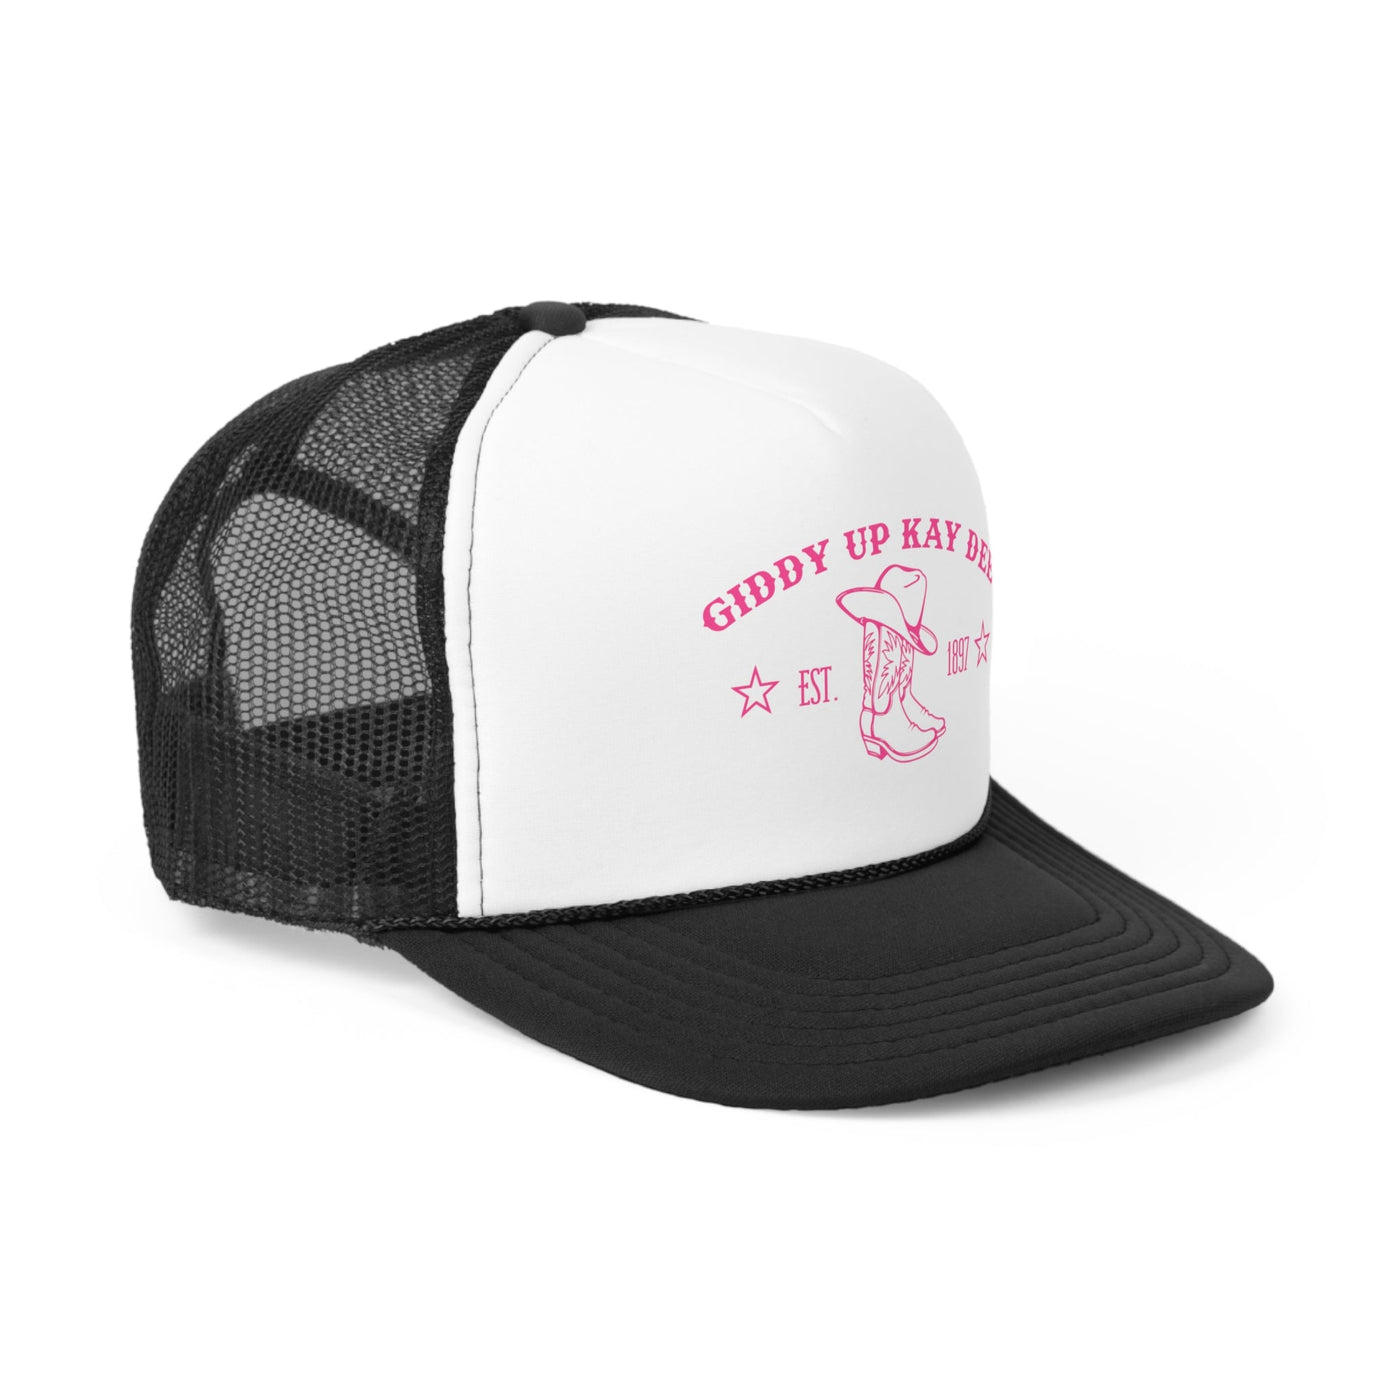 Kappa Delta Trendy Western Trucker Hat